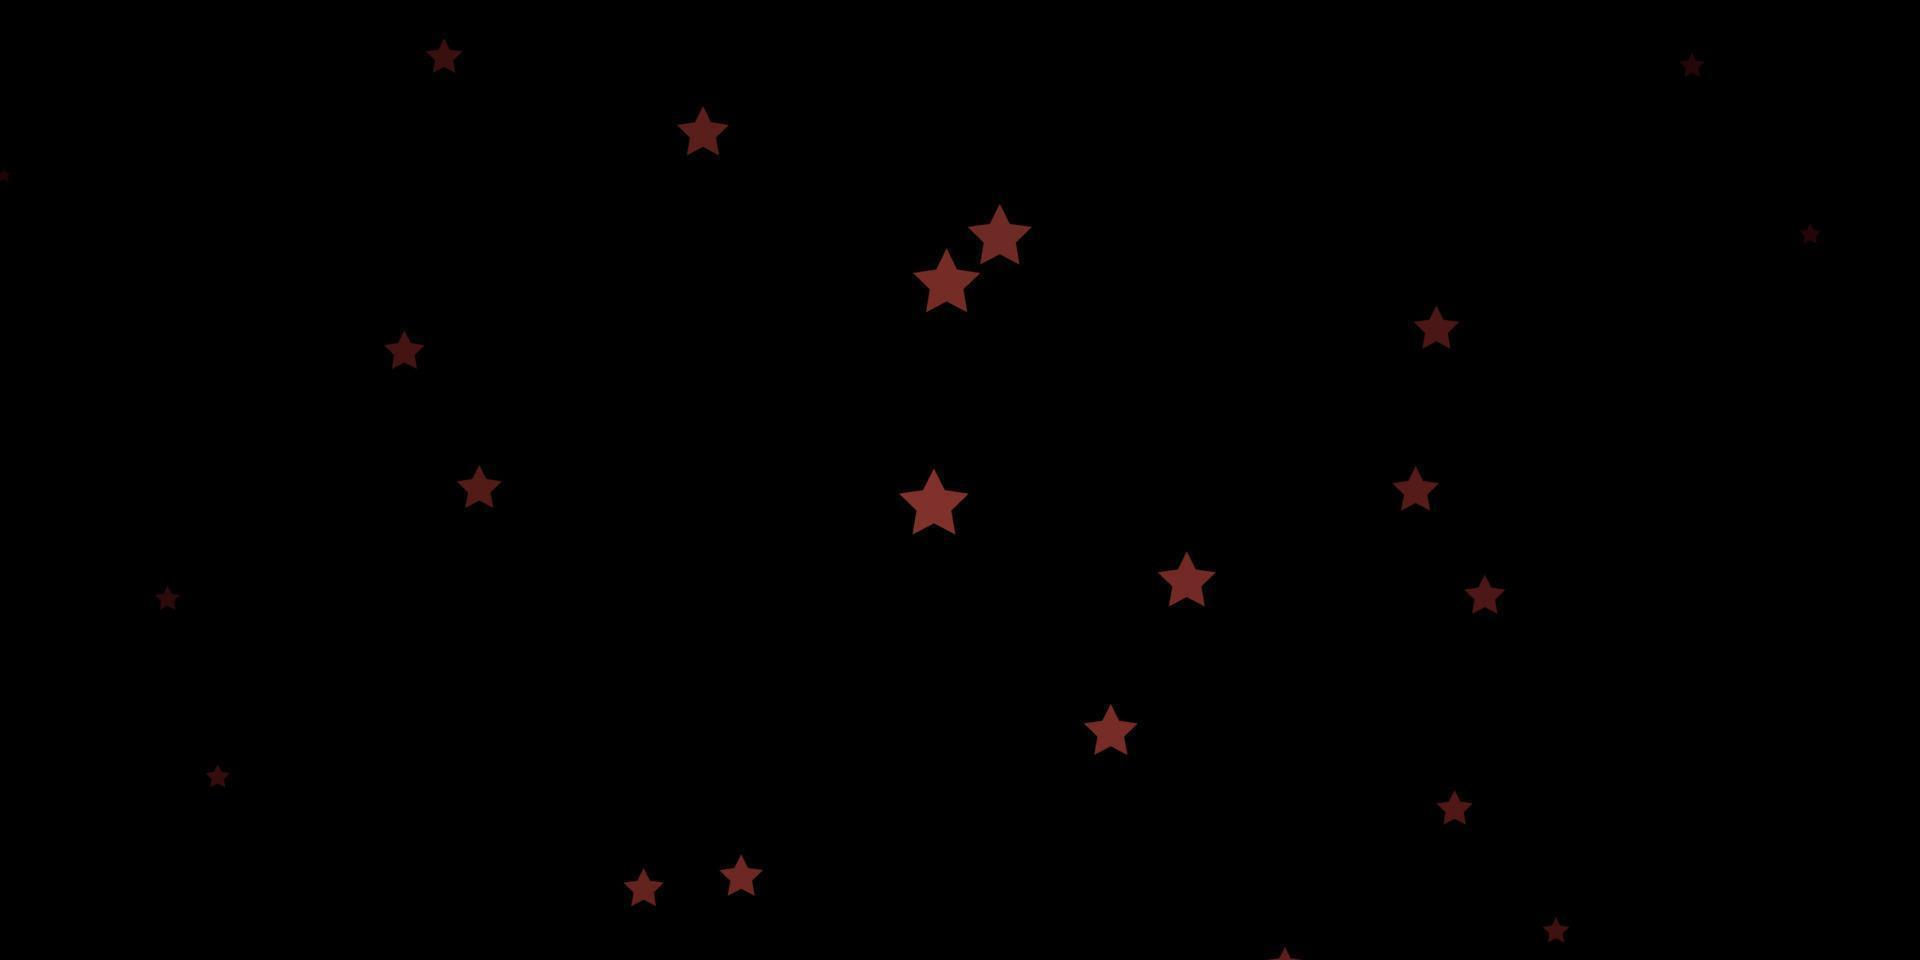 layout de vetor vermelho escuro com estrelas brilhantes.